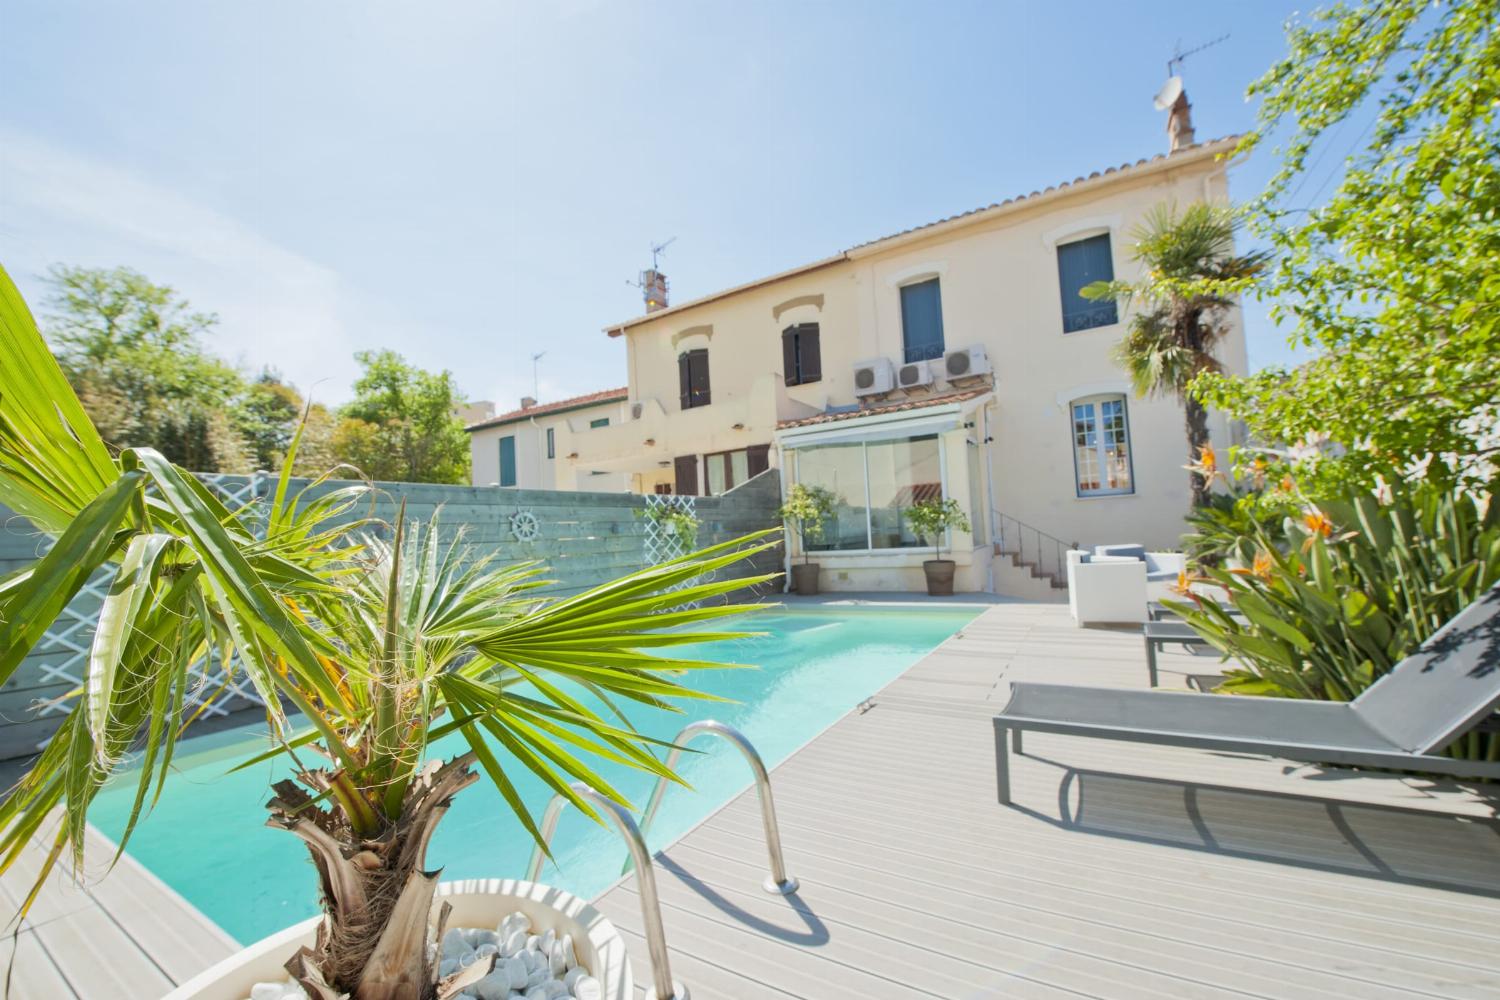 Location maison dans le sud de la France avec piscine privée